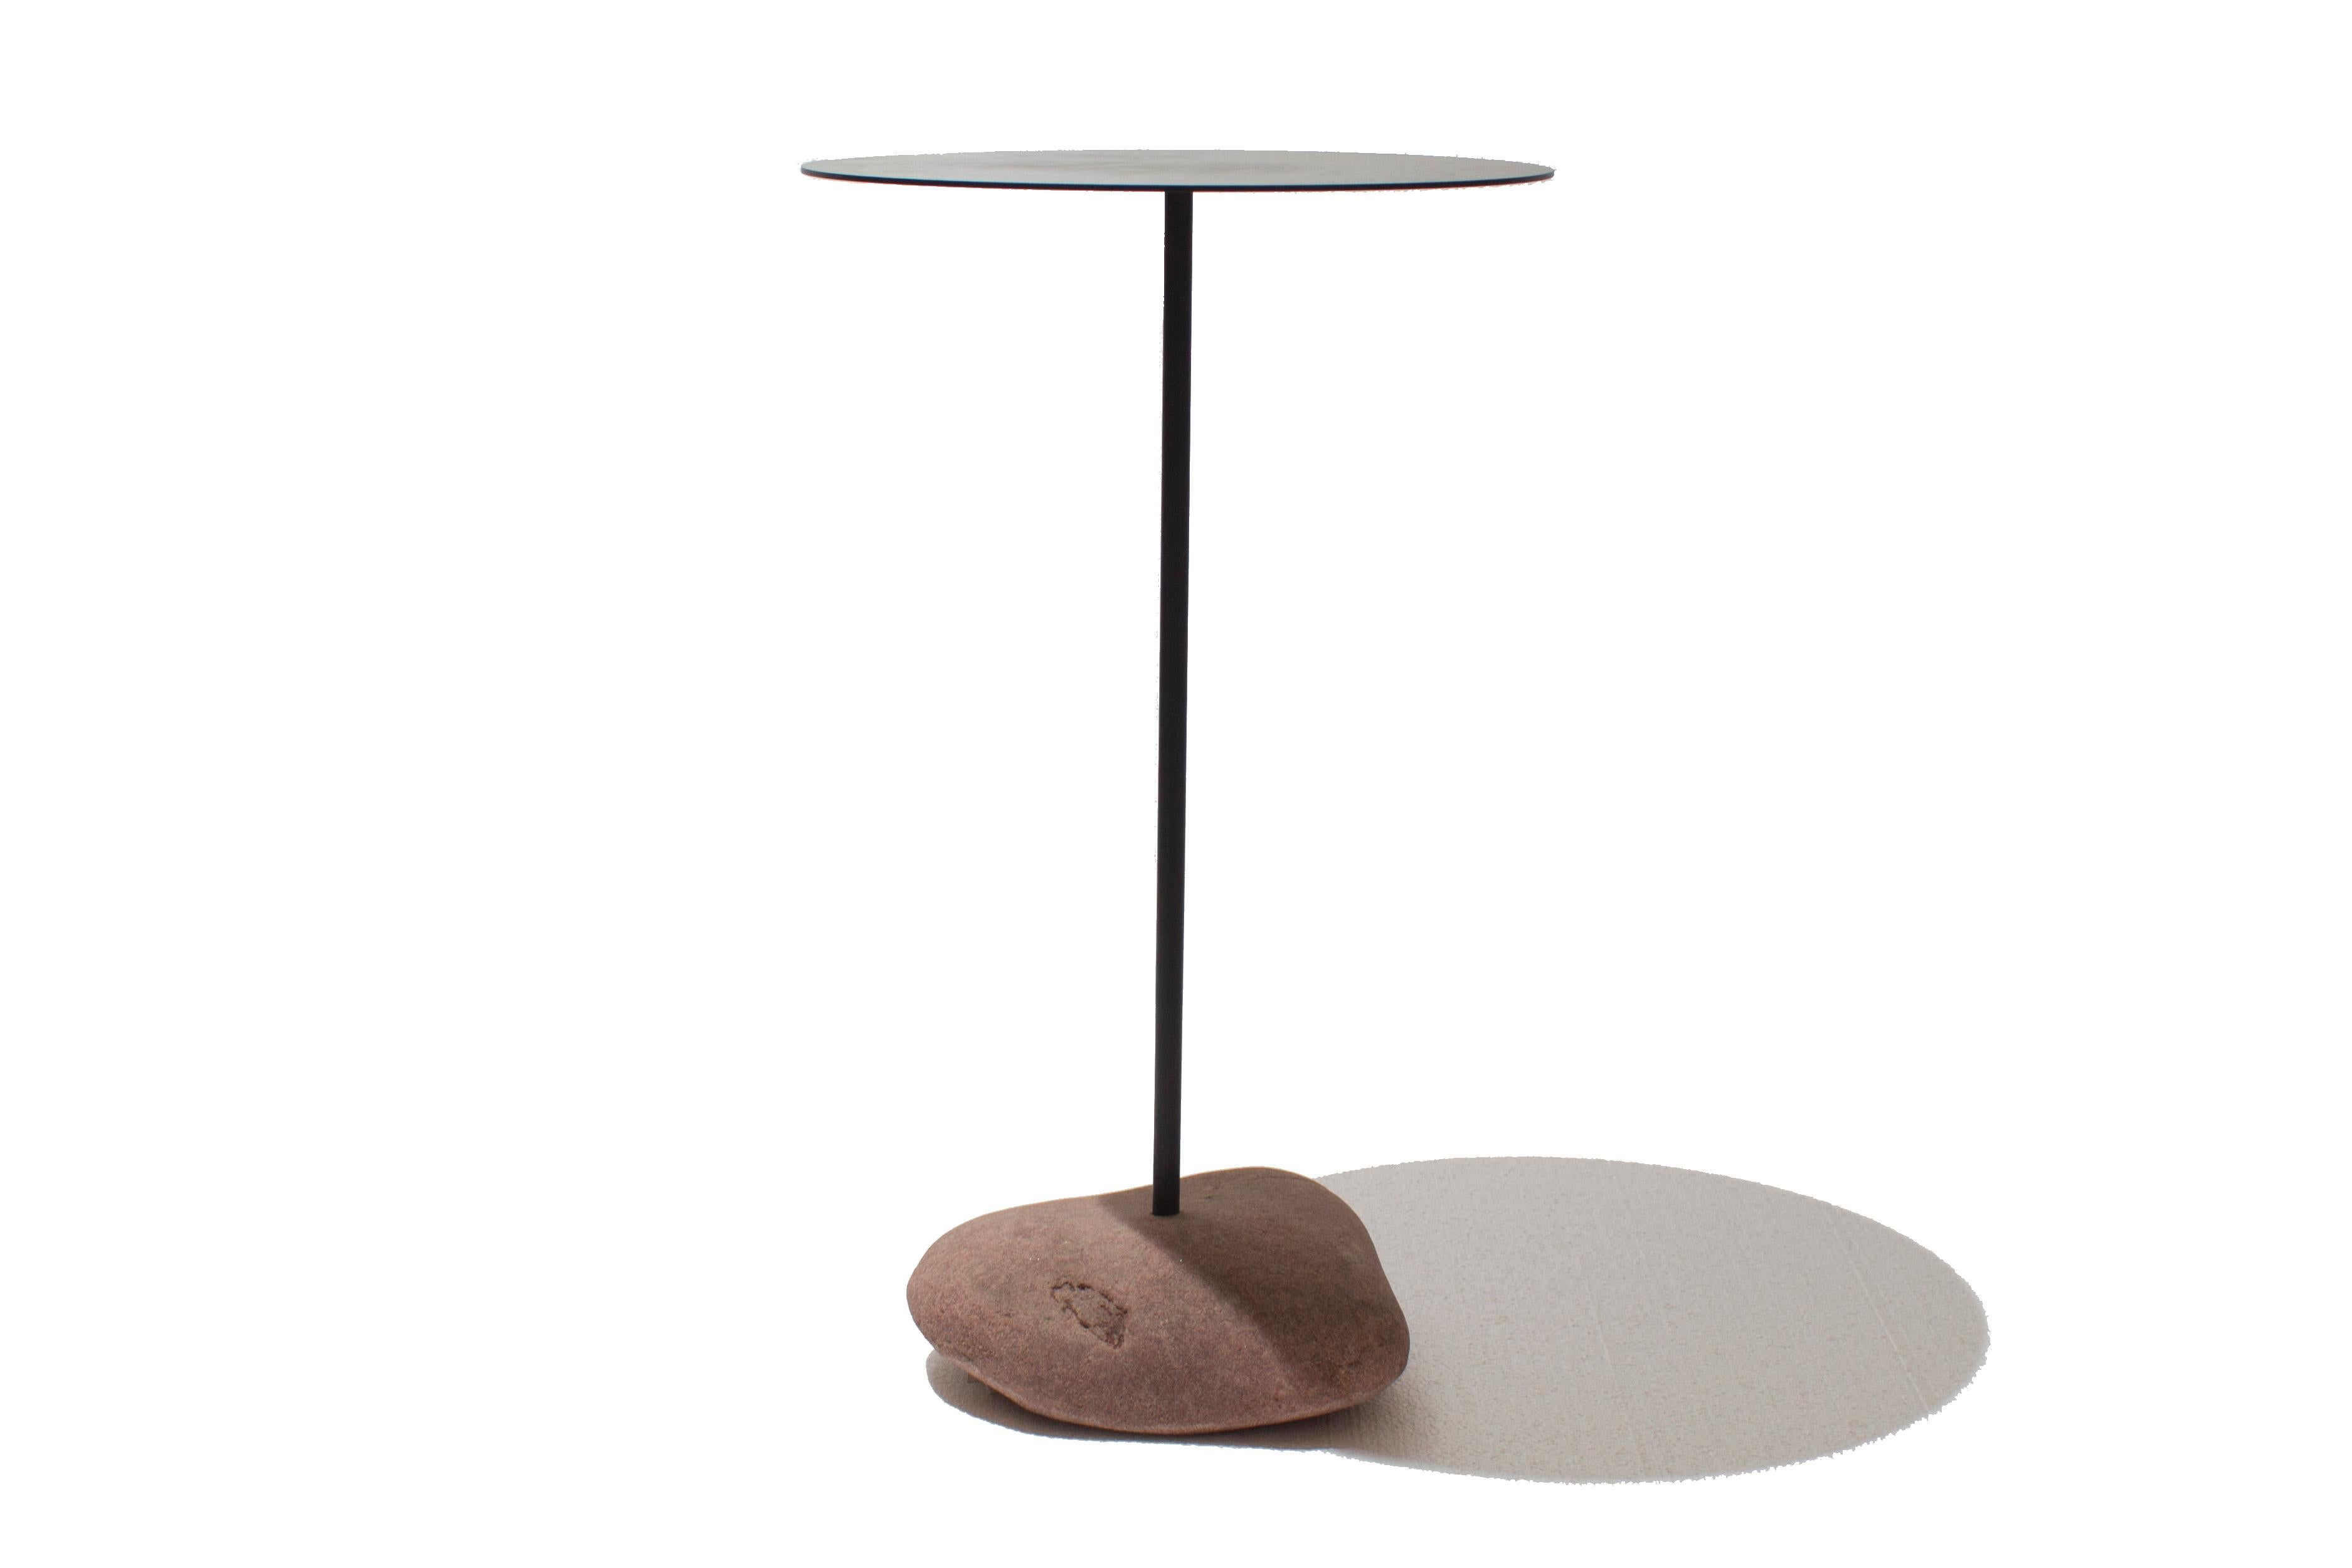 Cette nouvelle table d'appoint d'intérieur/extérieur s'inspire du style moderne minimal avec des détails terreux. La juxtaposition de la pierre naturelle et du plateau en acier revêtu de poudre noire matte crée un équilibre de texture et de